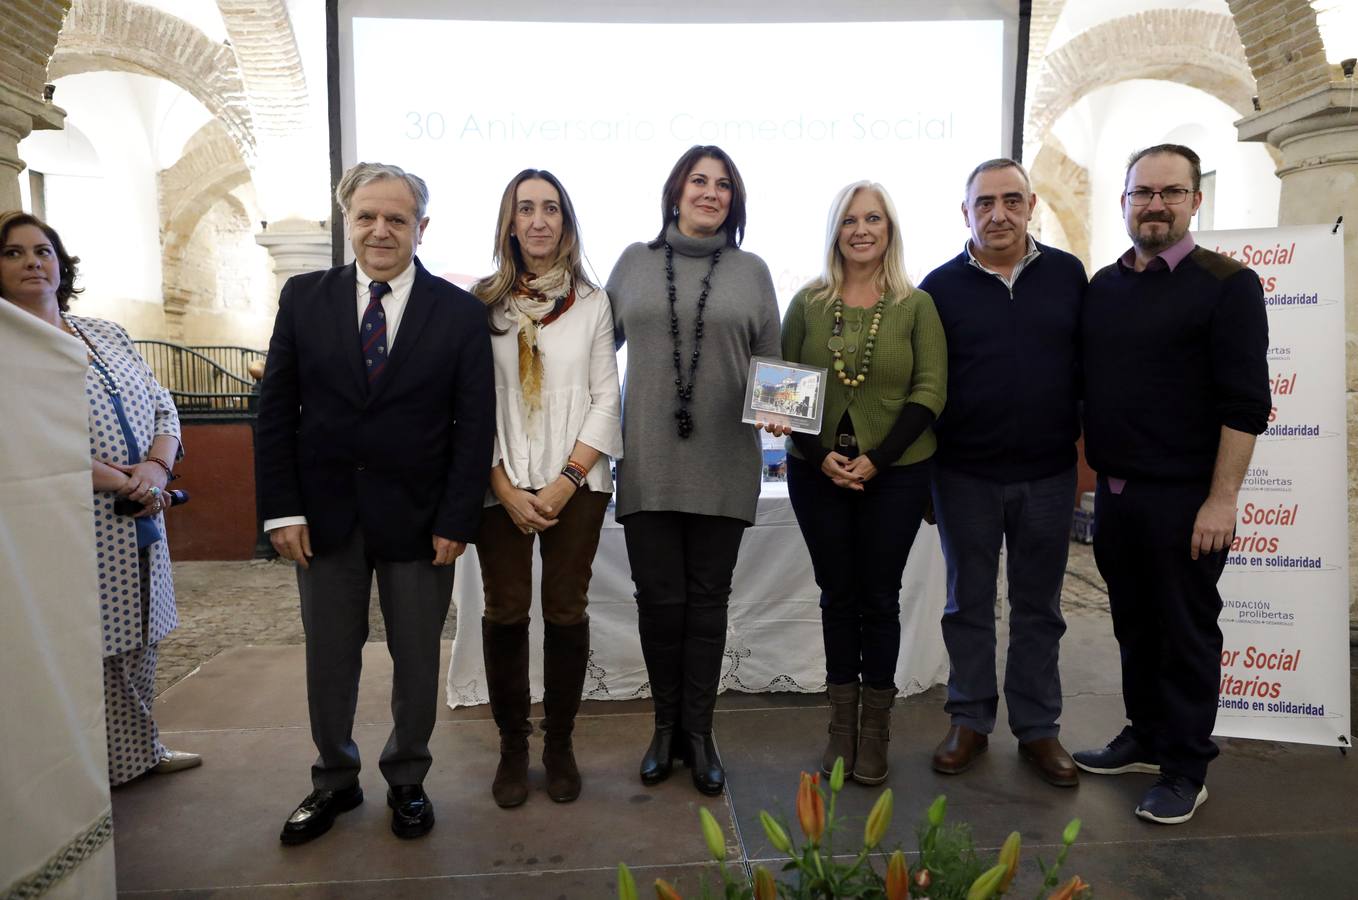 Los premios de Prolibertas al comedor de Trinitarios de Córdoba, en imágenes